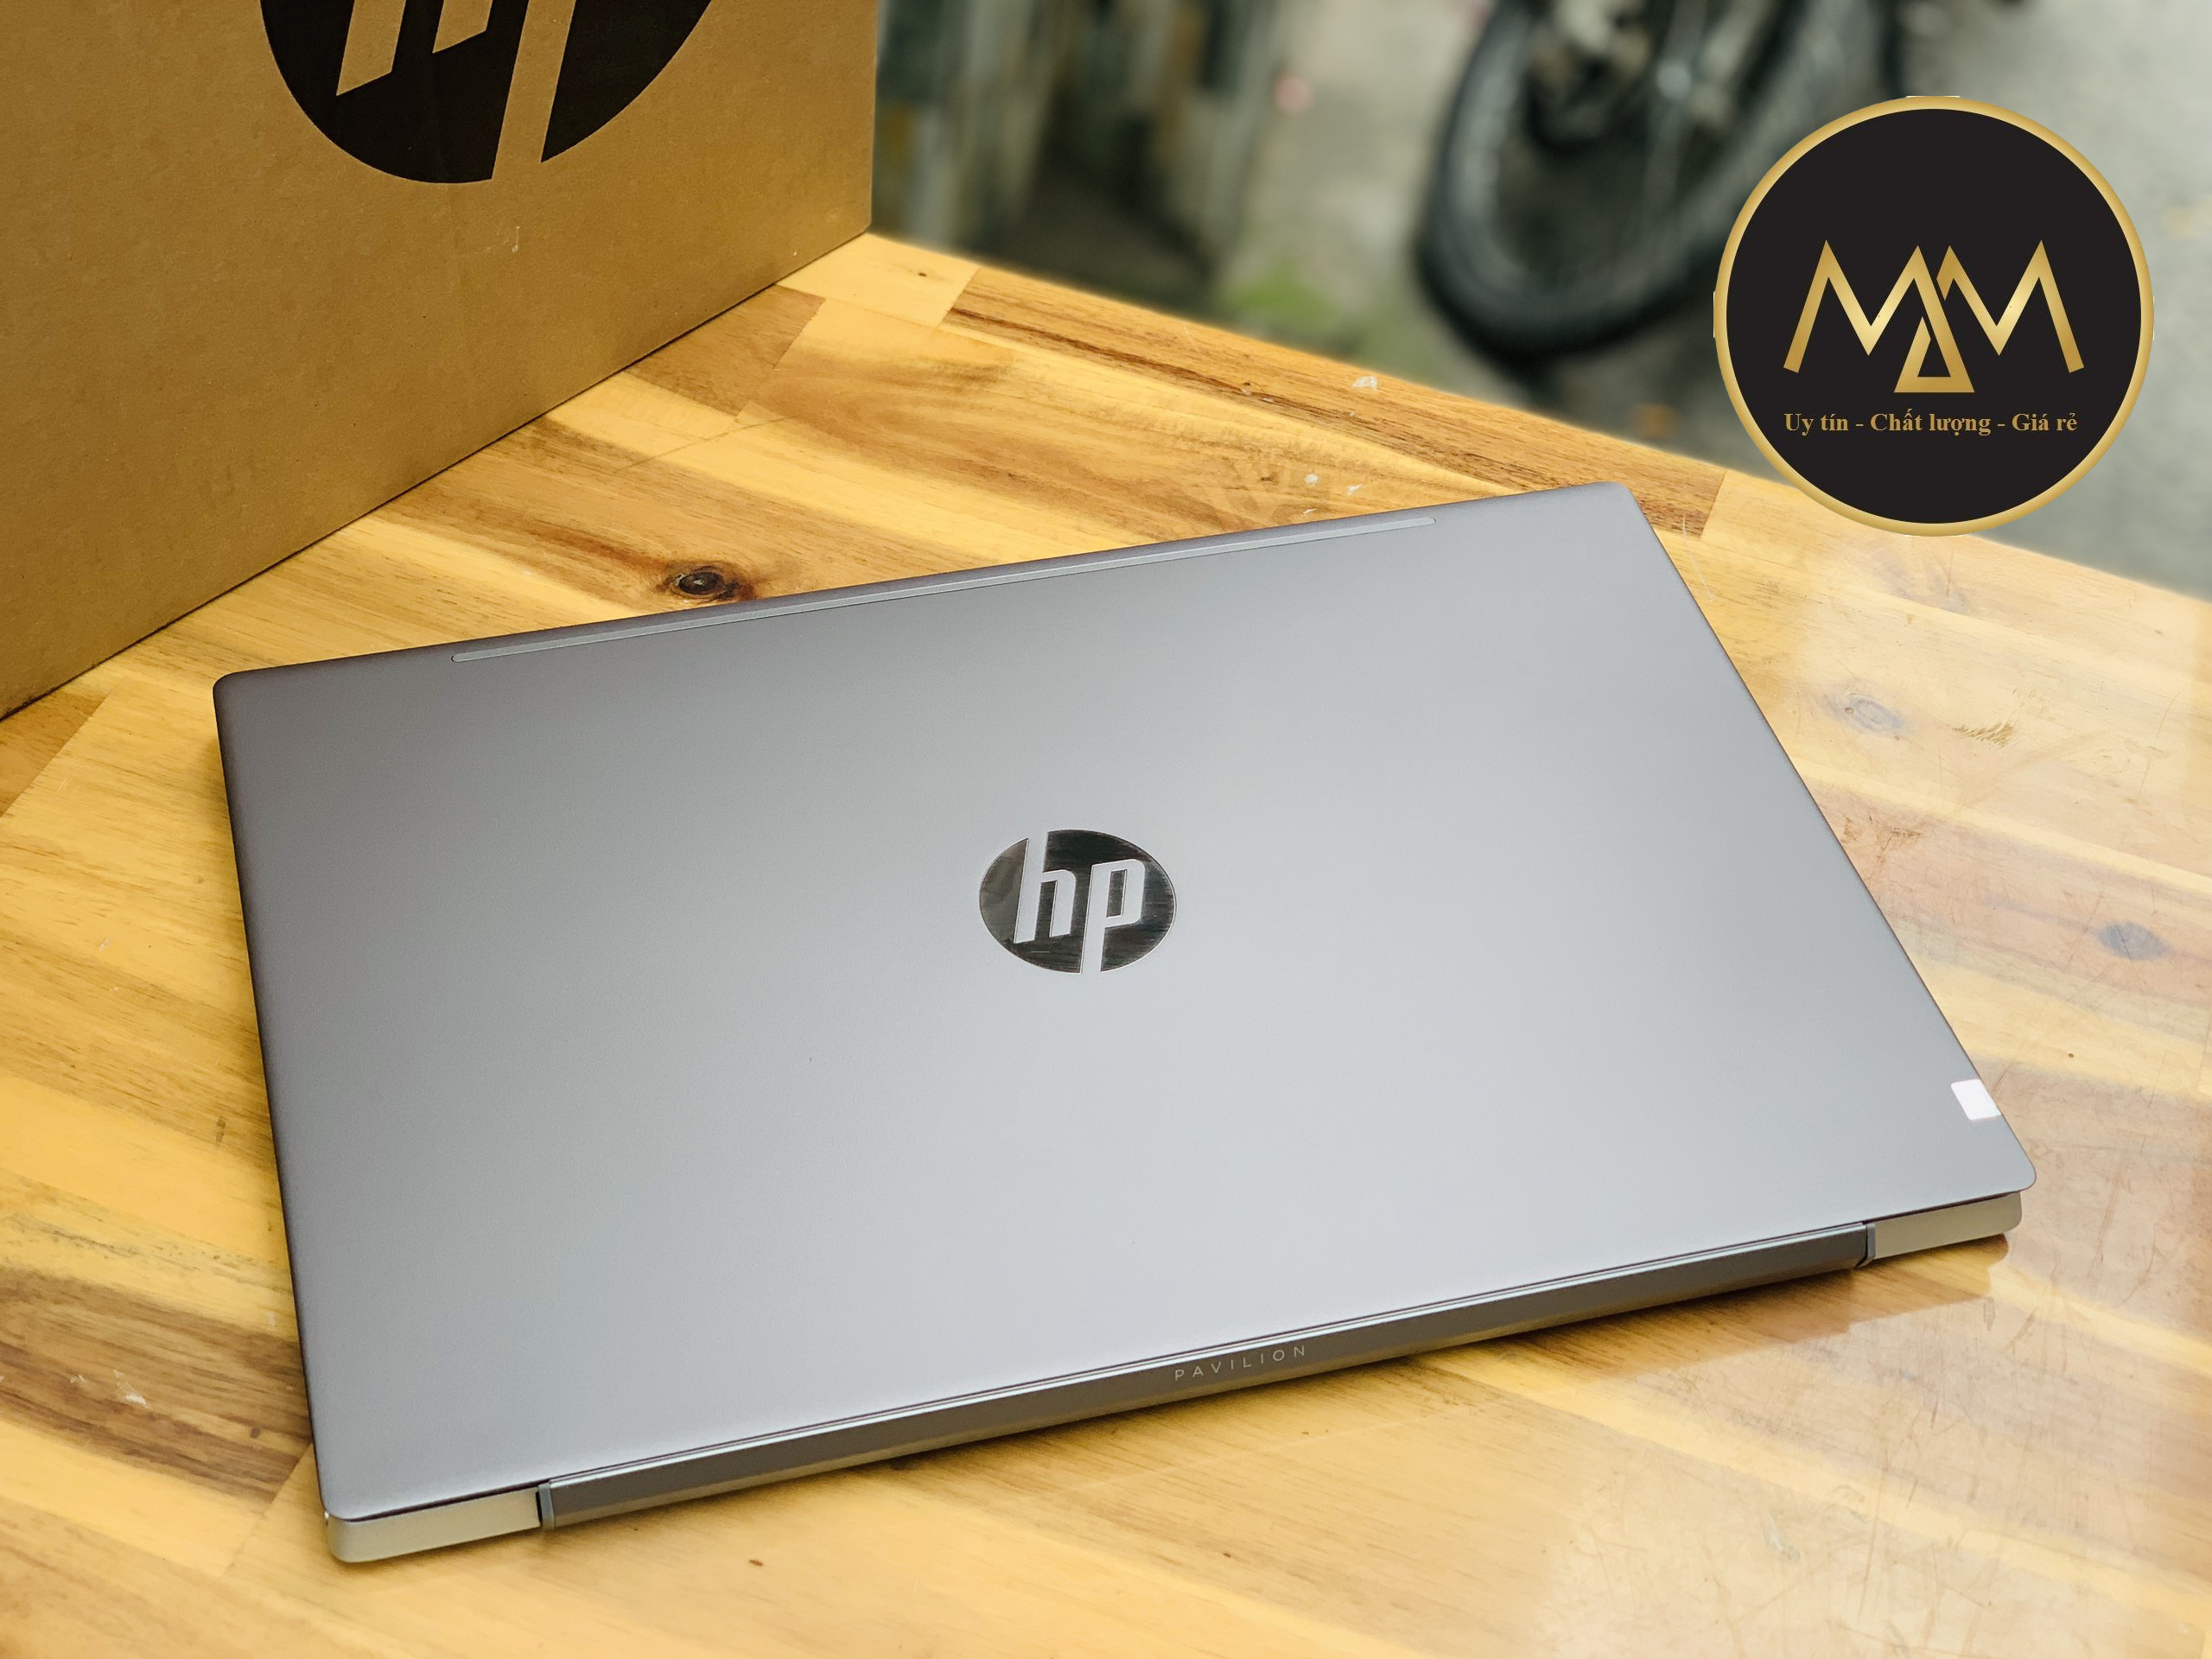 Laptop HP Pavilion 15 CS i7 1065G7 8CPUS/ 8G/ SSD/ Vga MX250 = 4G/ Full HD IPS/ Viền Mỏng/ Siêu Mỏng Giá rẻ2